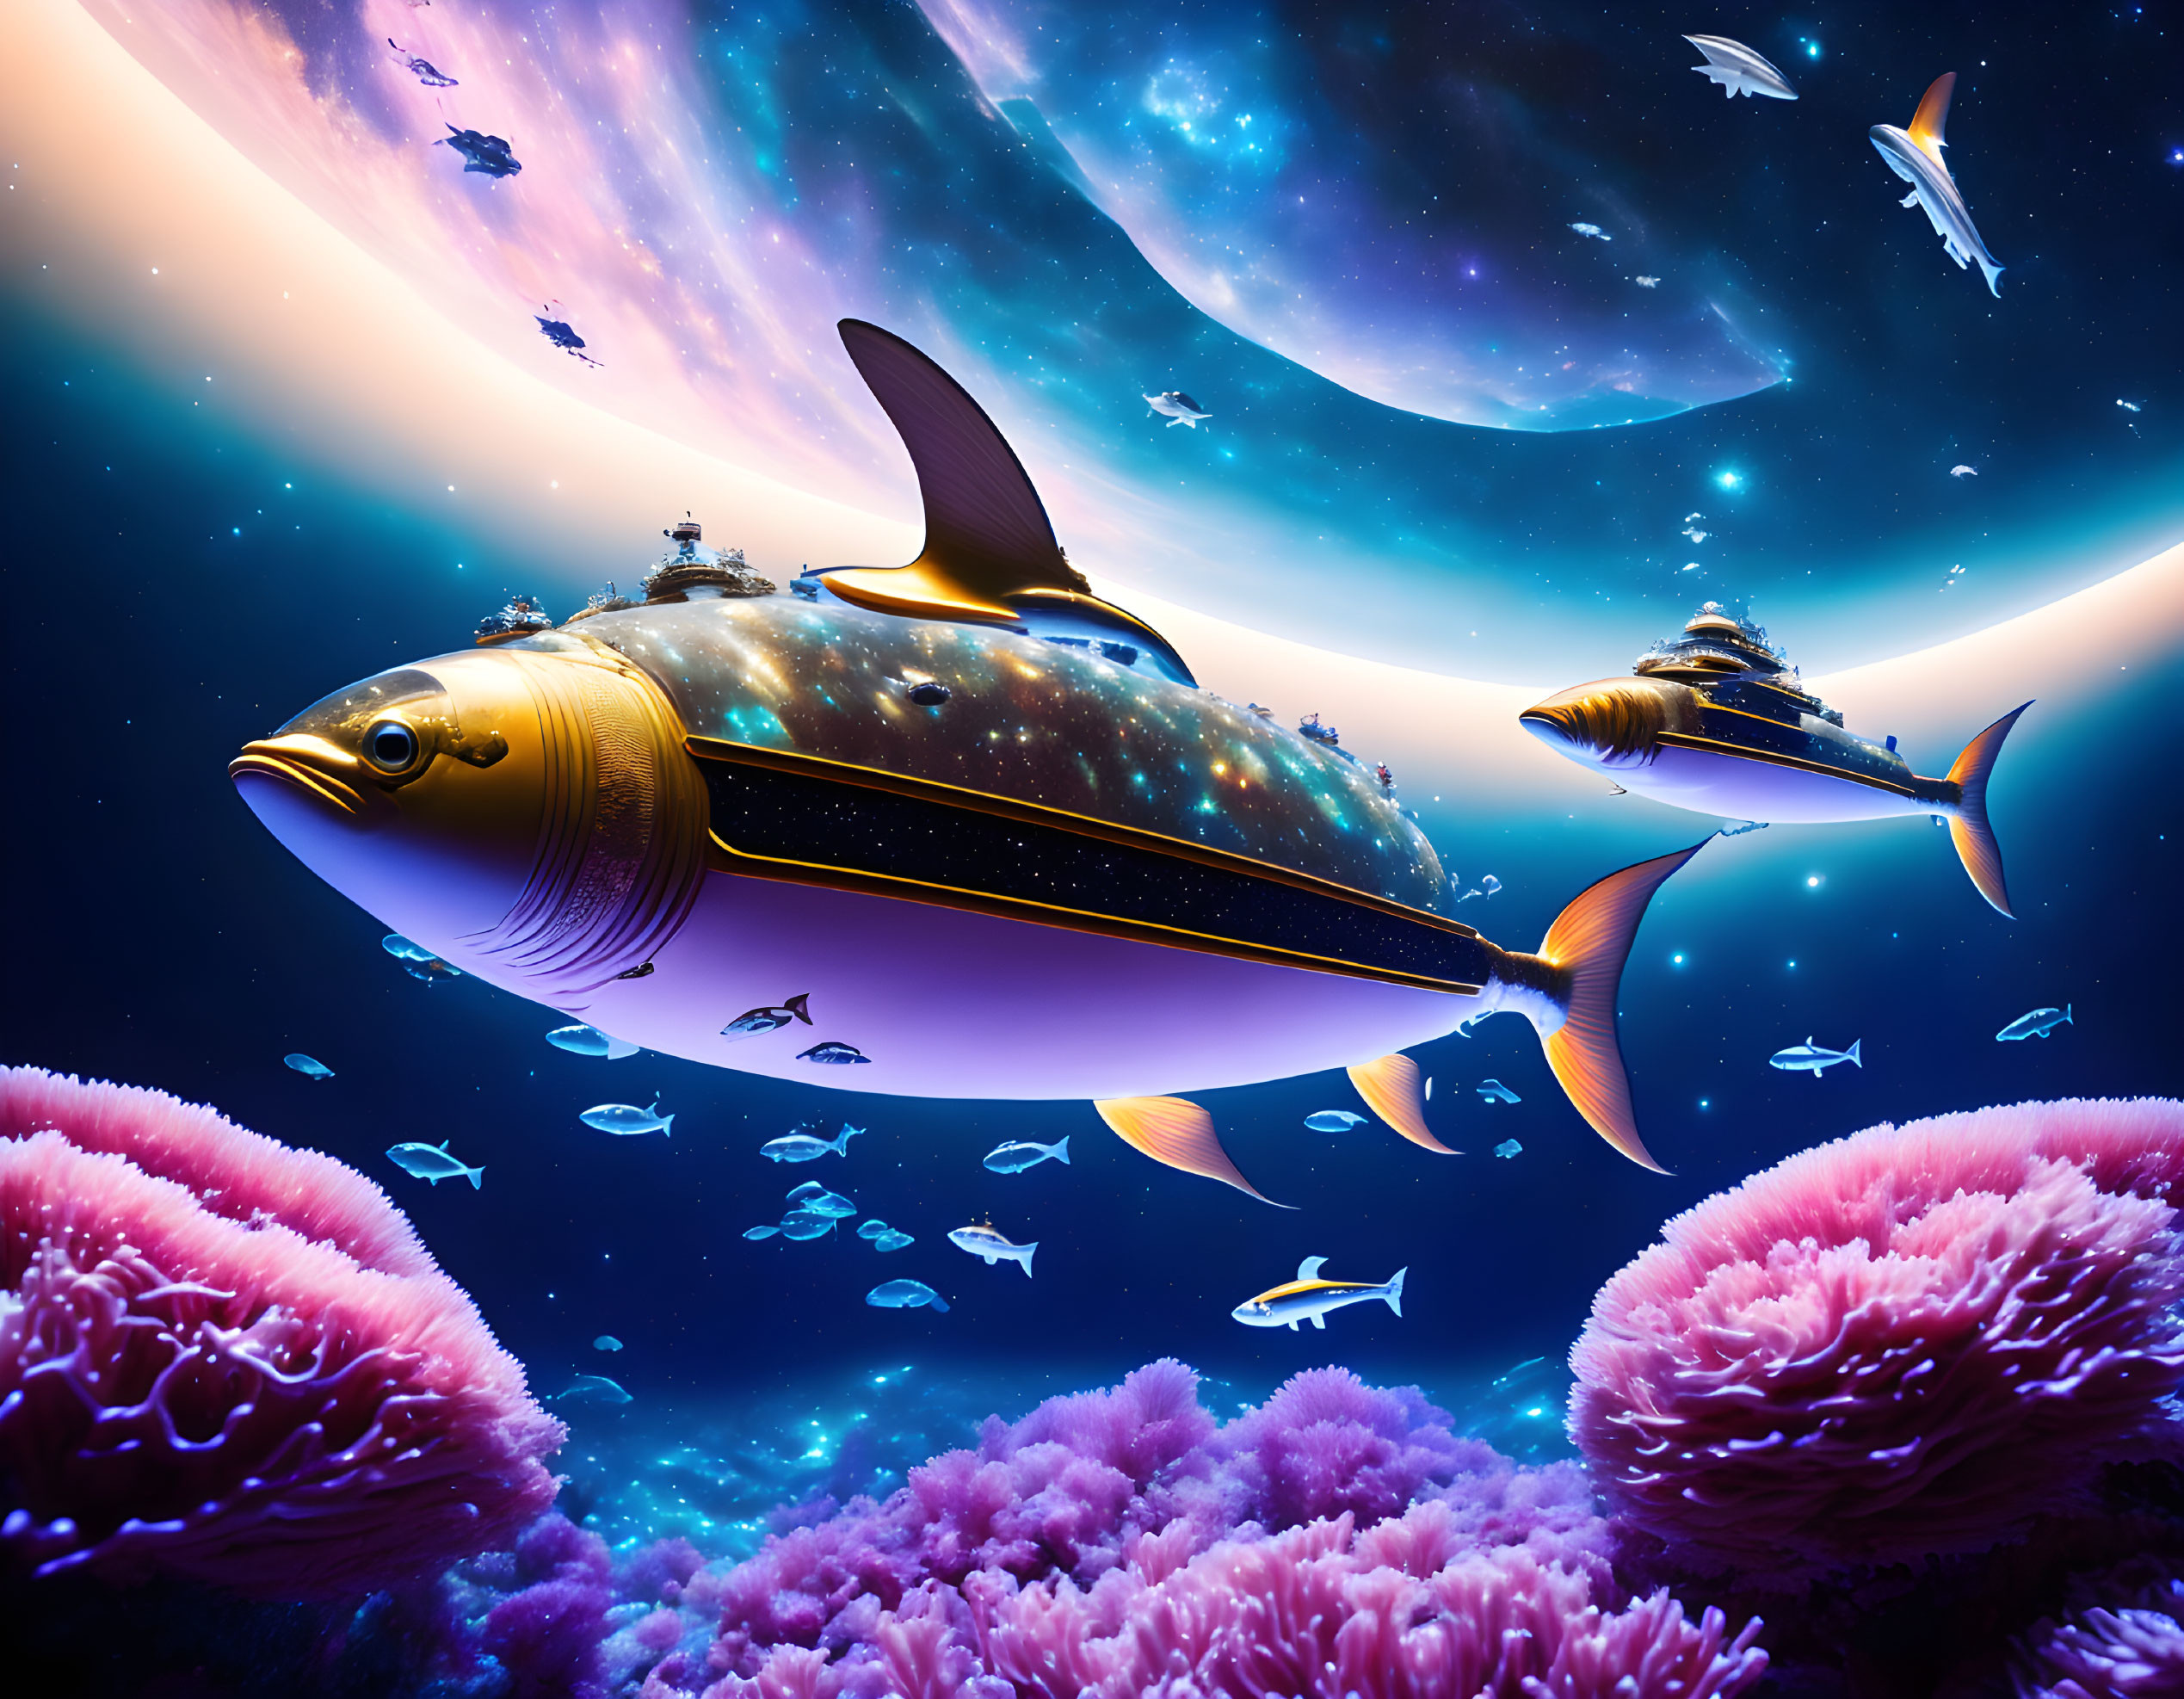 Colorful digital artwork: Spaceship-like fish in underwater scene with coral reef.